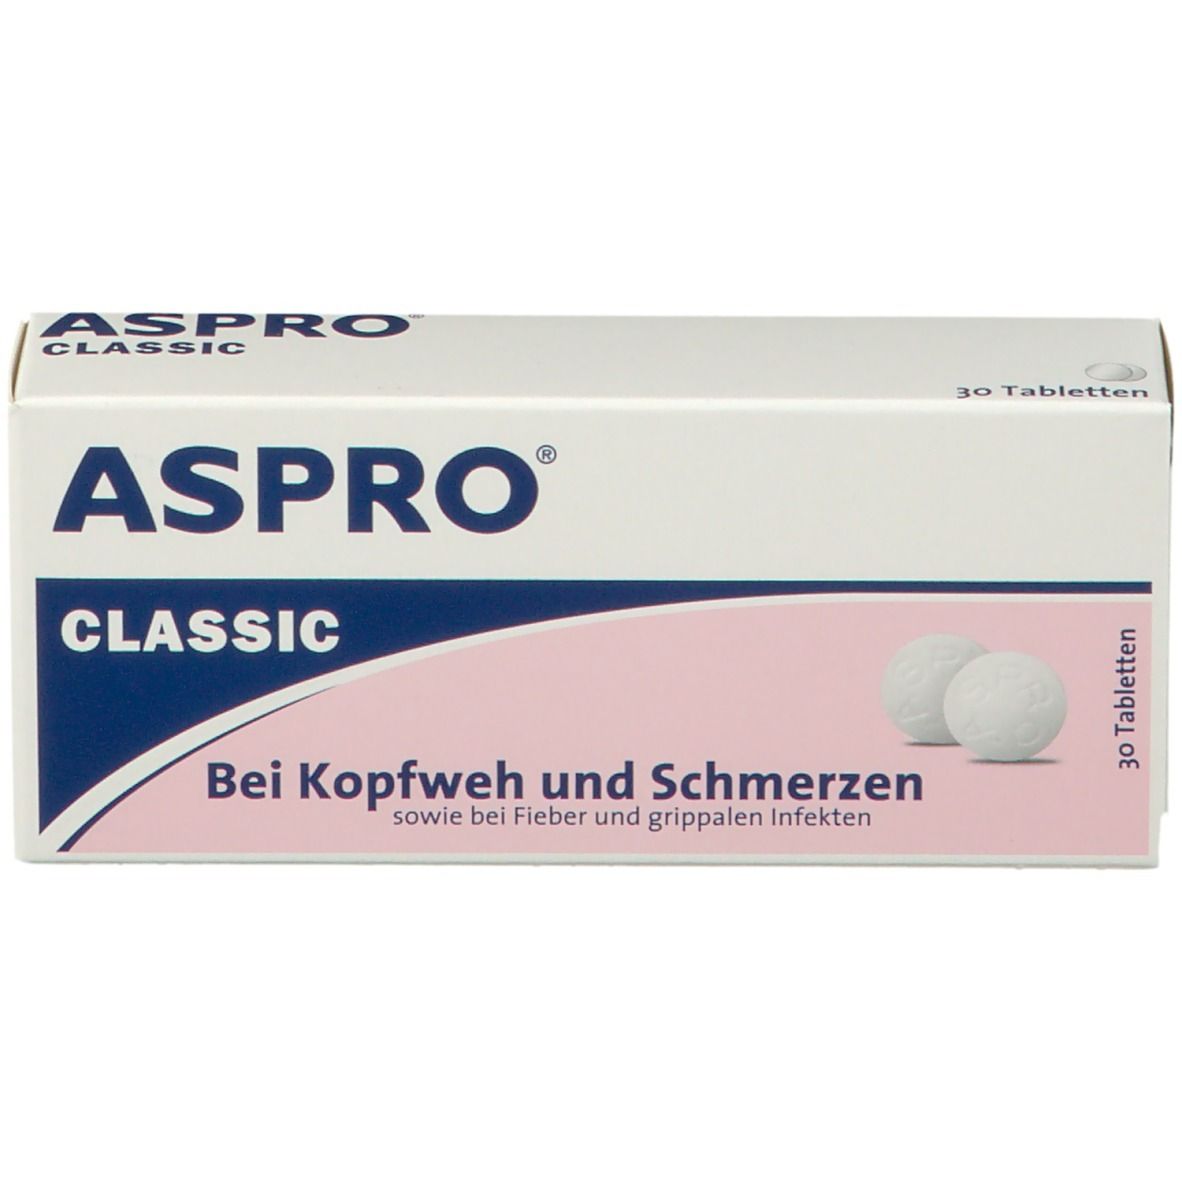 ASPRO® Classic